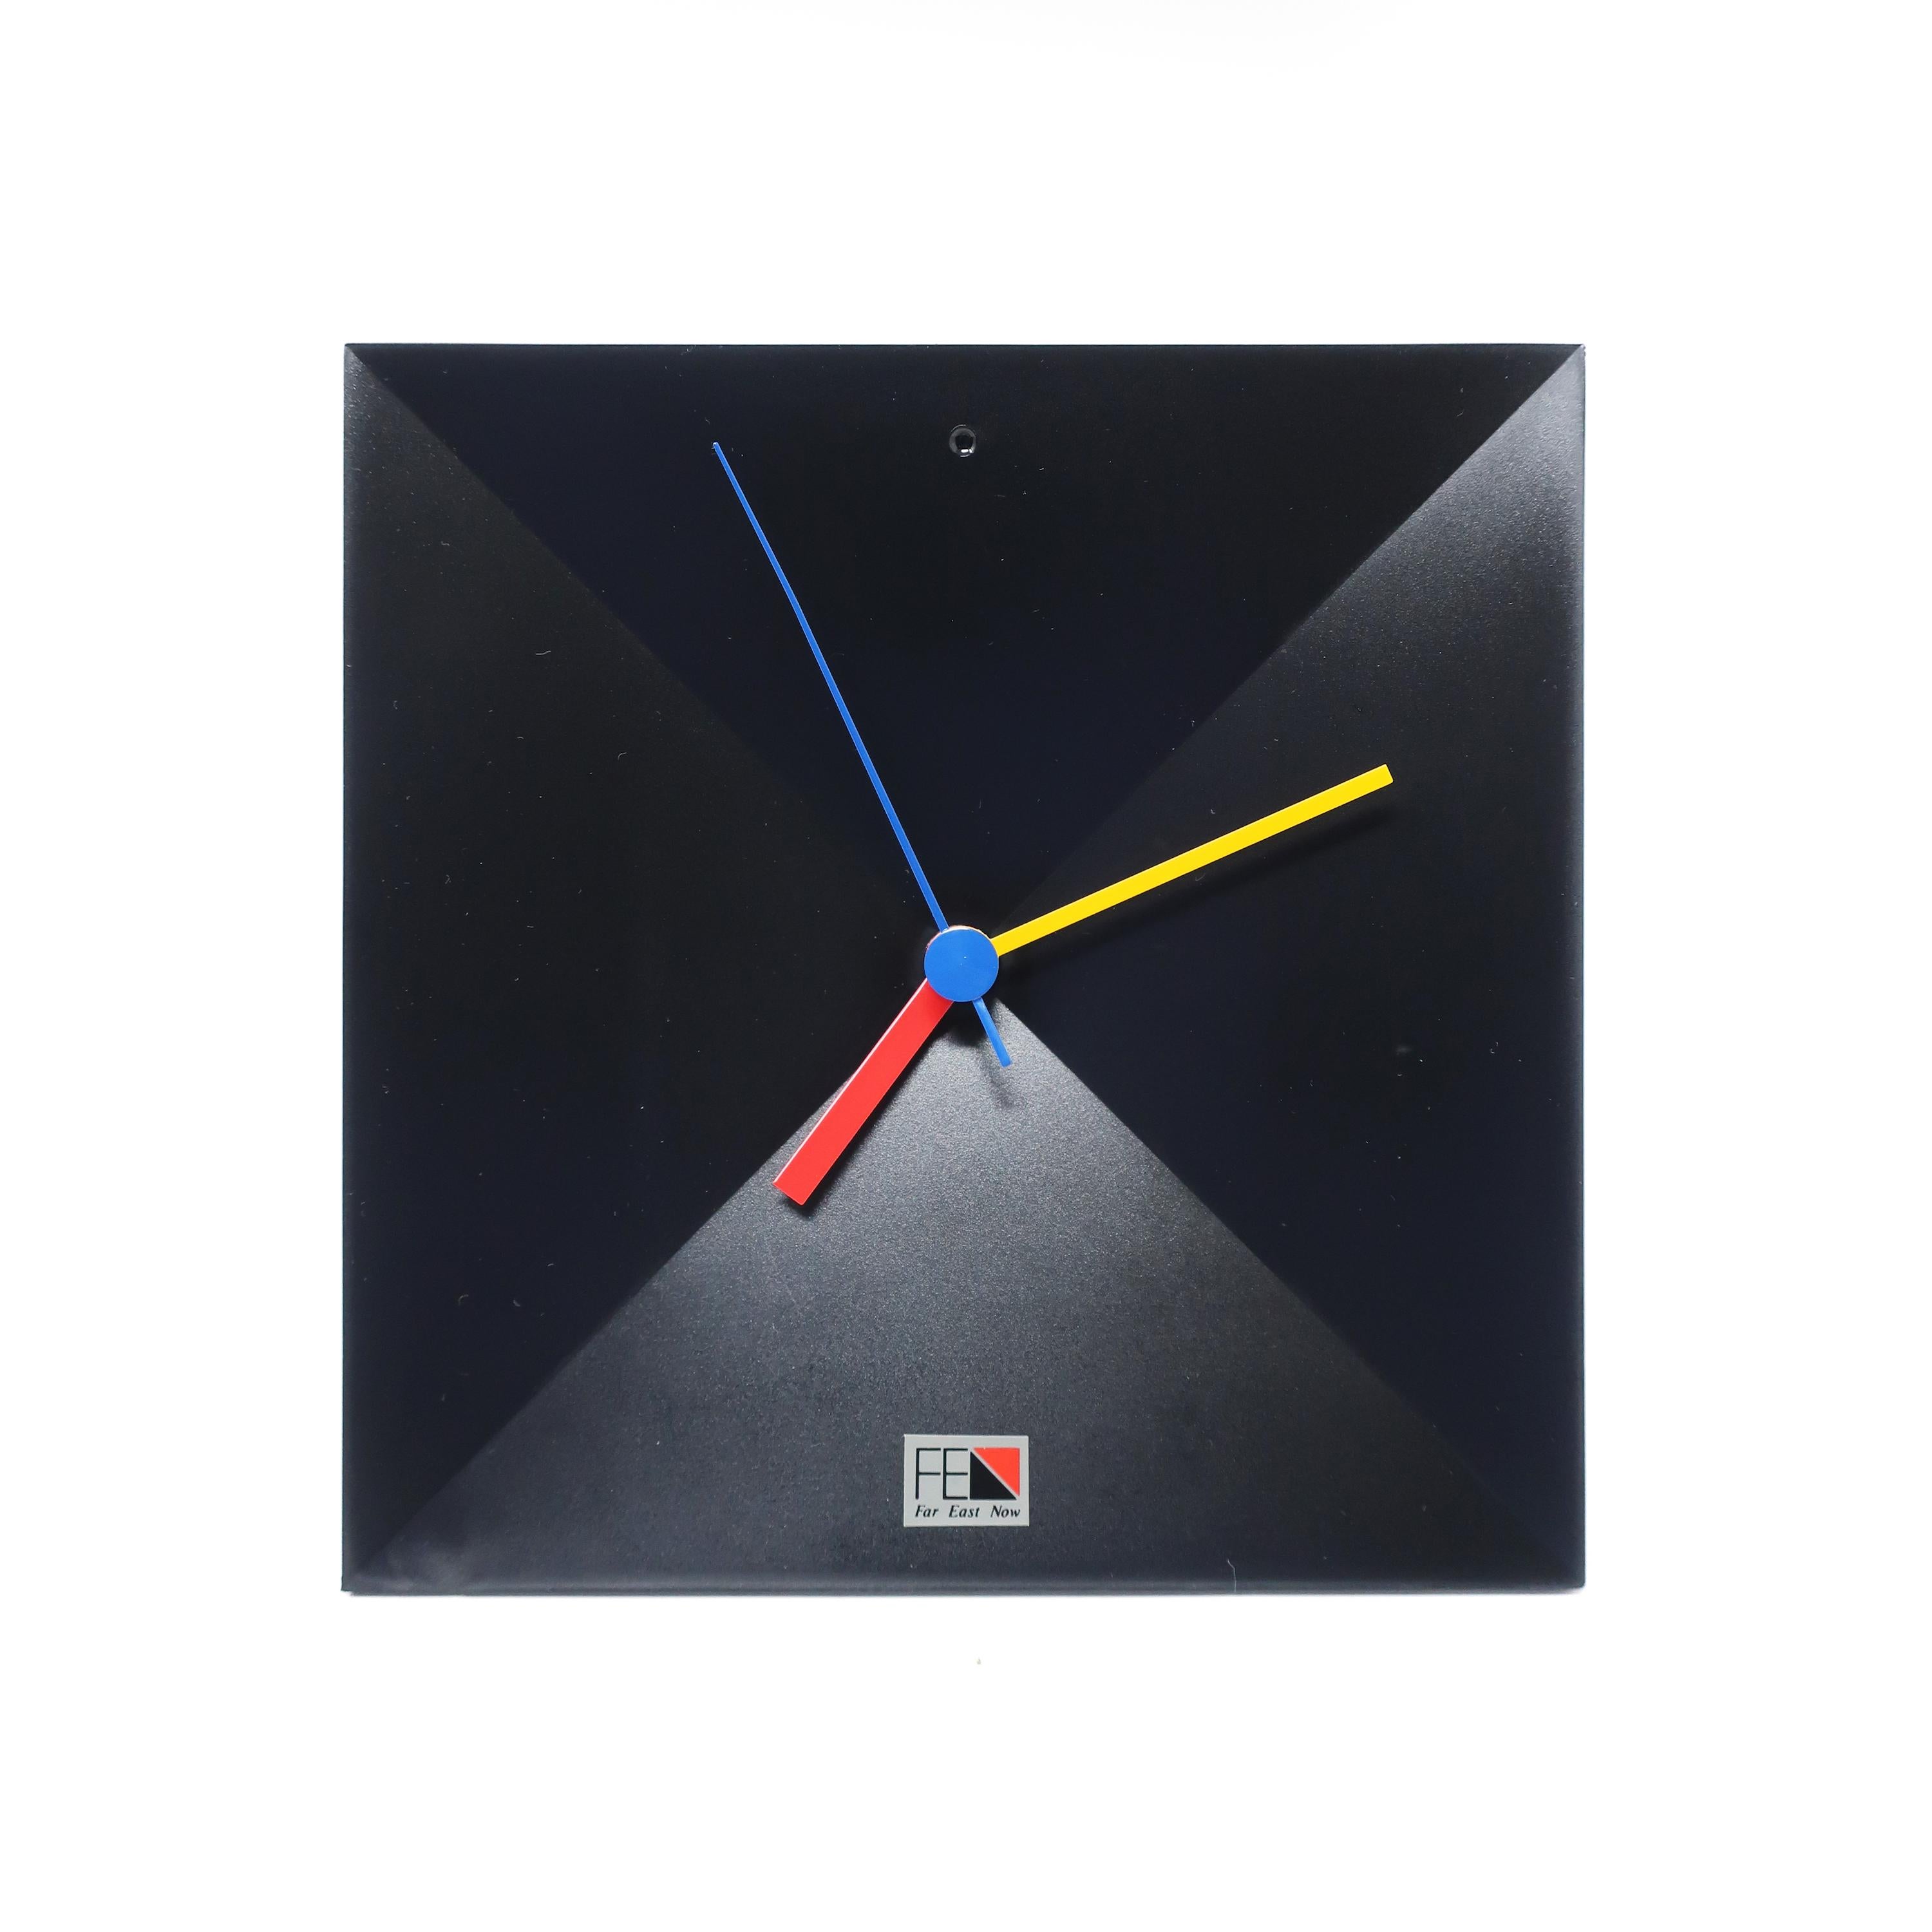 Une horloge de table ou de bureau noire des années 1980 aux accents jaunes, rouges et bleus. Le fabricant, Shiseido, a capturé l'esthétique postmoderne en utilisant des couleurs primaires, des angles frappants et des lignes sophistiquées. 

En bon